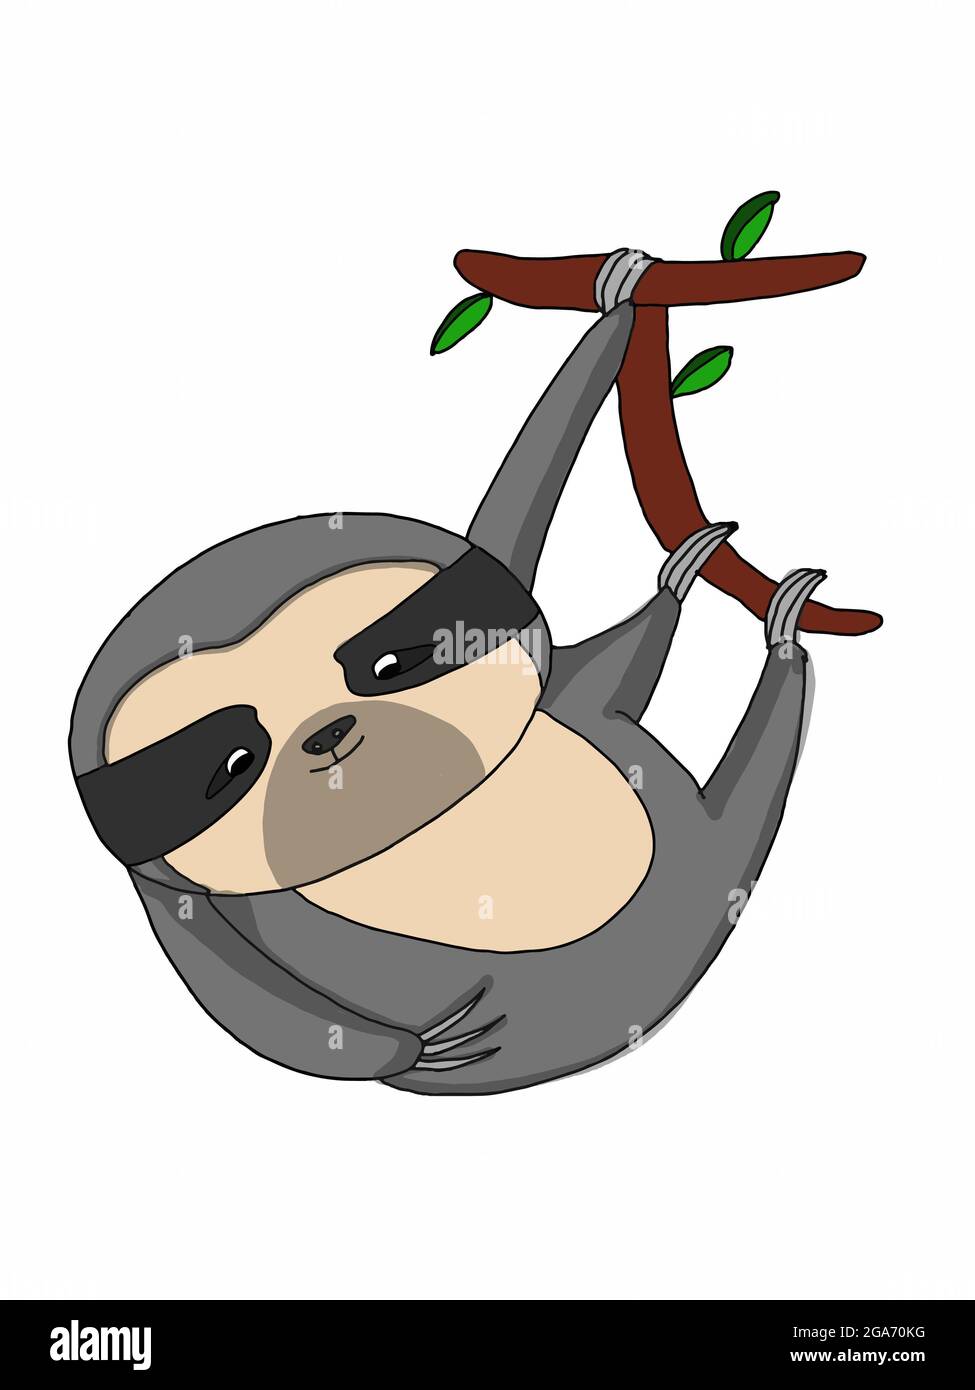 Mignon, sloth, illustration de fond rose Banque D'Images